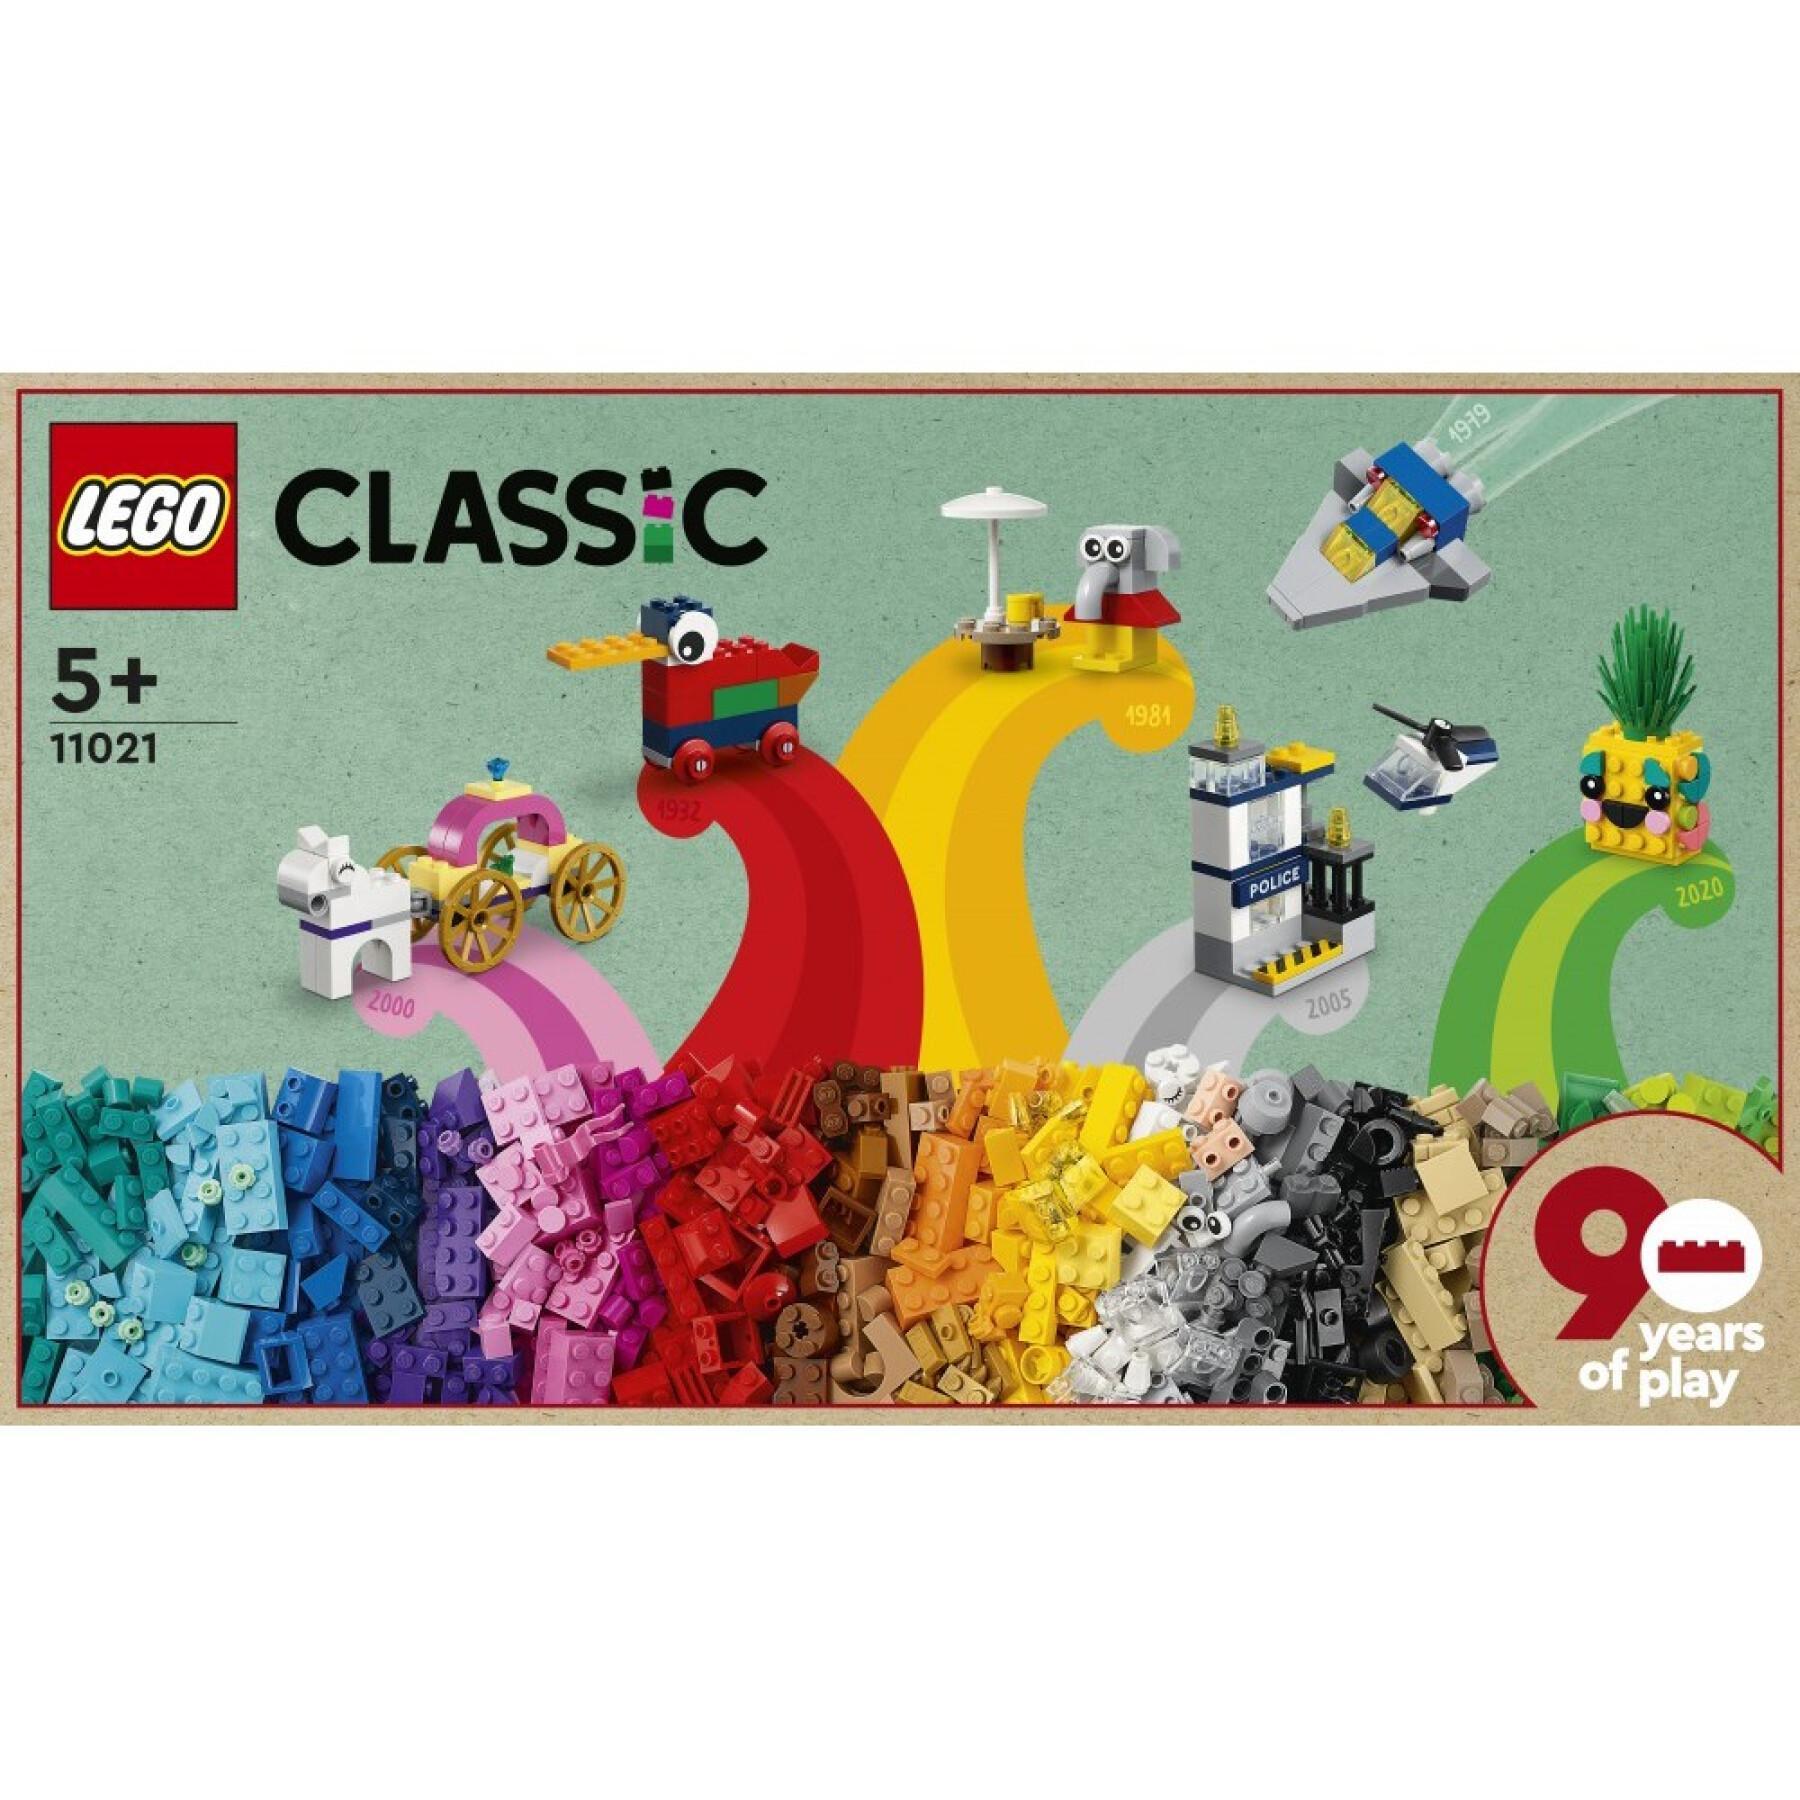 90 ans de jeu Lego